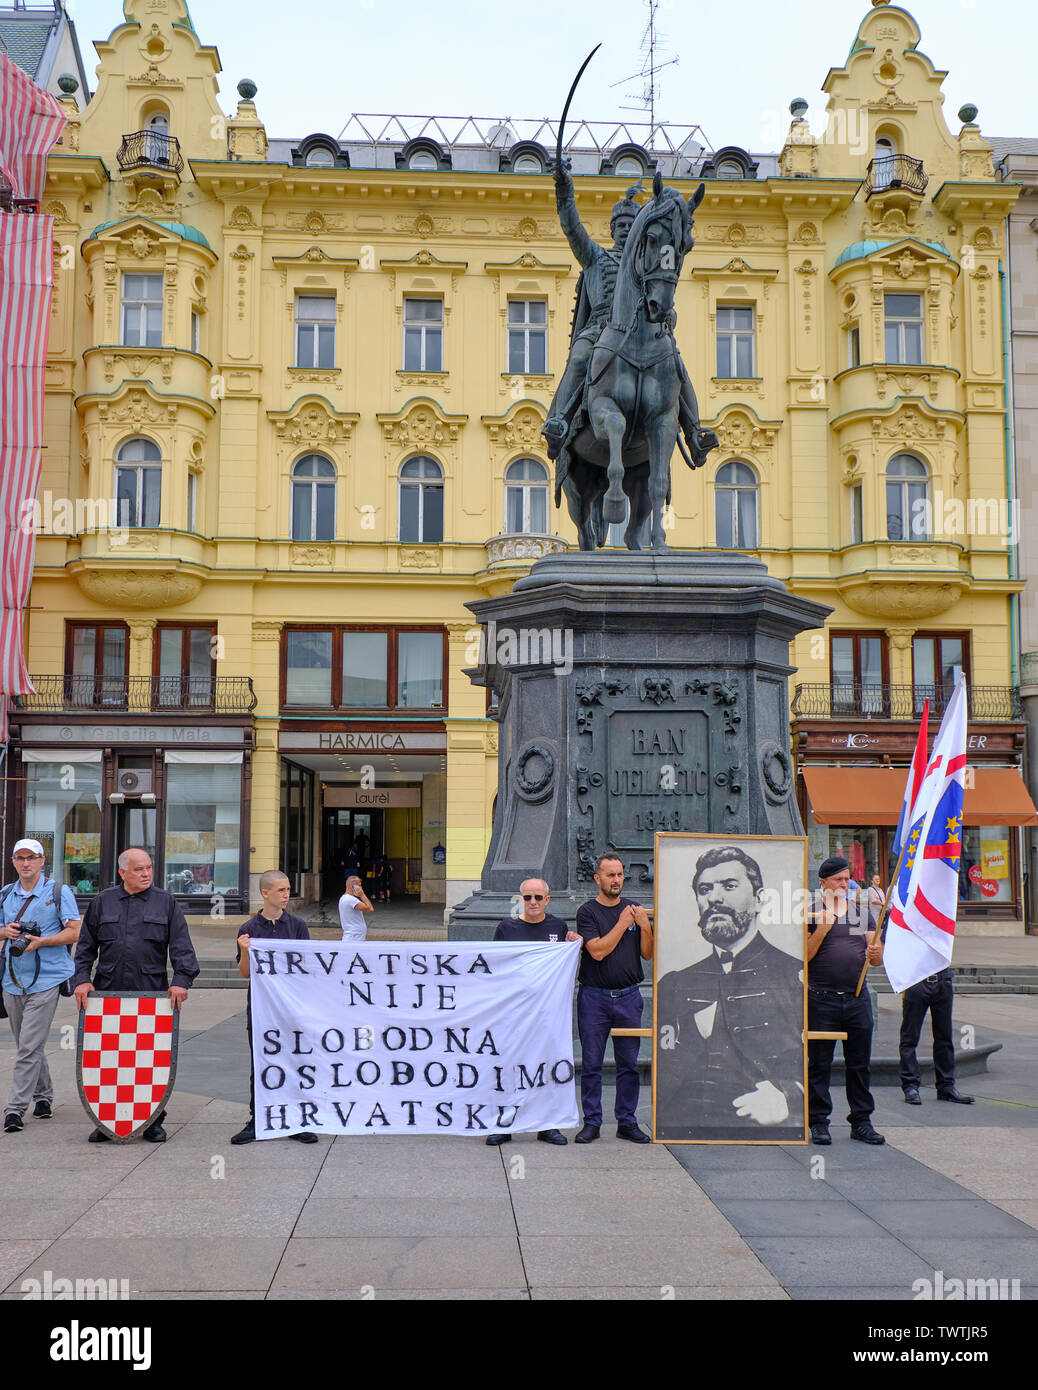 Zagreb, Croatie, 23 juin 2019 : HSP conduire aile droite rassemblement politique , doté d''homme habillé en noir forme croate, le noir et les drapeaux de l'UE Banque D'Images